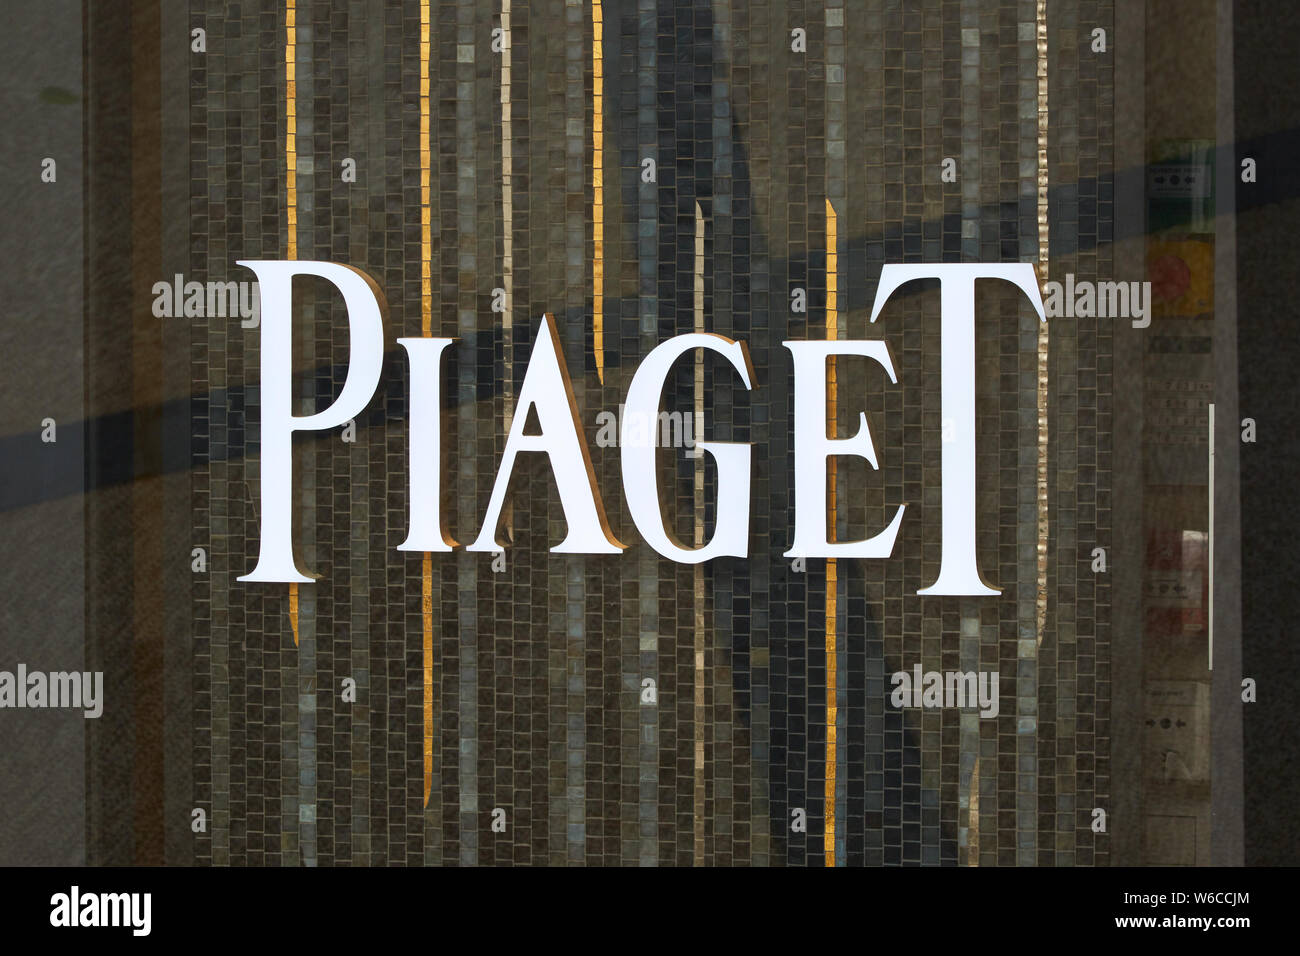 MONTE CARLO, MONACO - 20. AUGUST 2016: Piaget schmuck Luxus store mit Mosaik Hintergrund in Monte Carlo, Monaco. Stockfoto